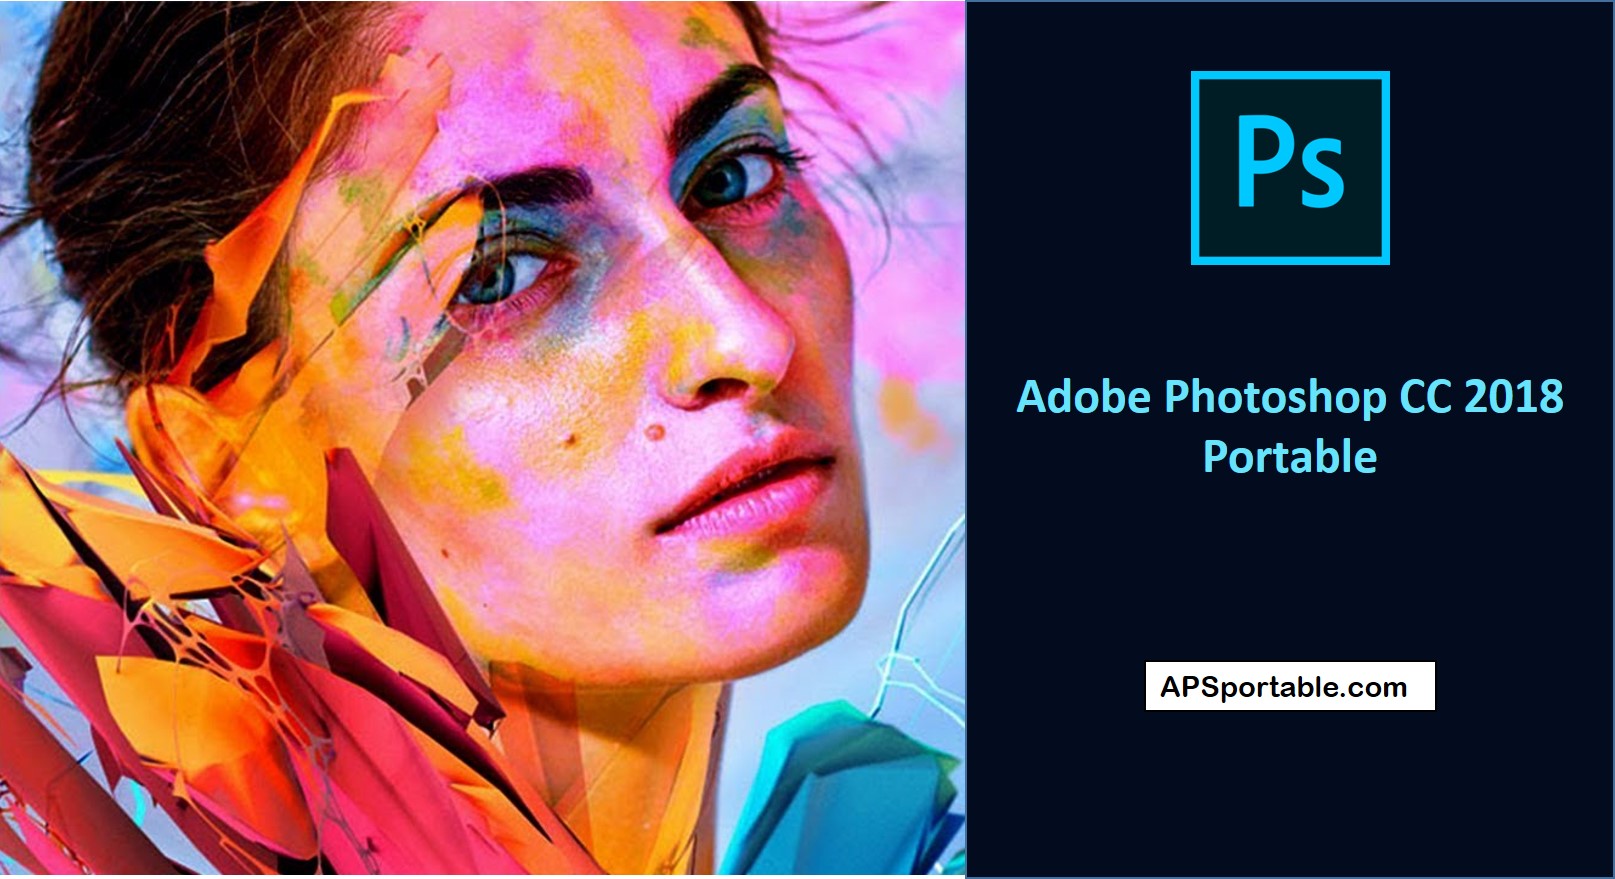 Adobe Photoshop CC 2018 Portable 32/64 bit download